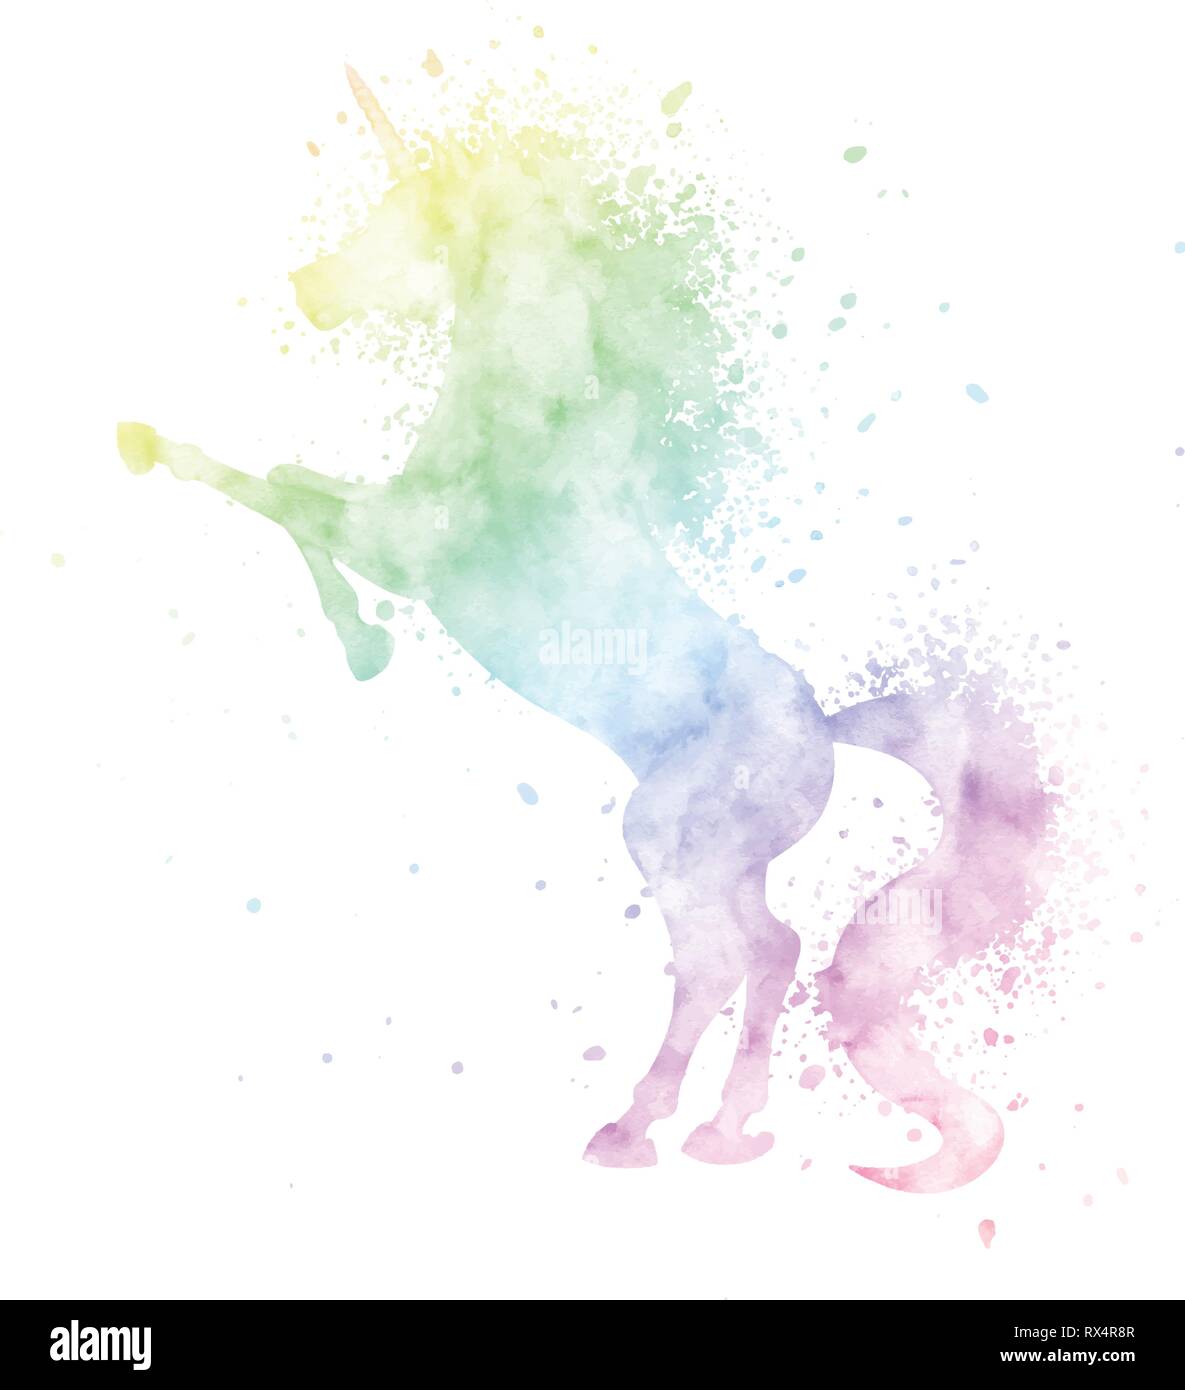 Acquerello unicorn silhouette pittura con texture splash isolati su sfondo bianco. Carino magia creatura illustrazione vettoriale nei colori dell'arcobaleno. Illustrazione Vettoriale